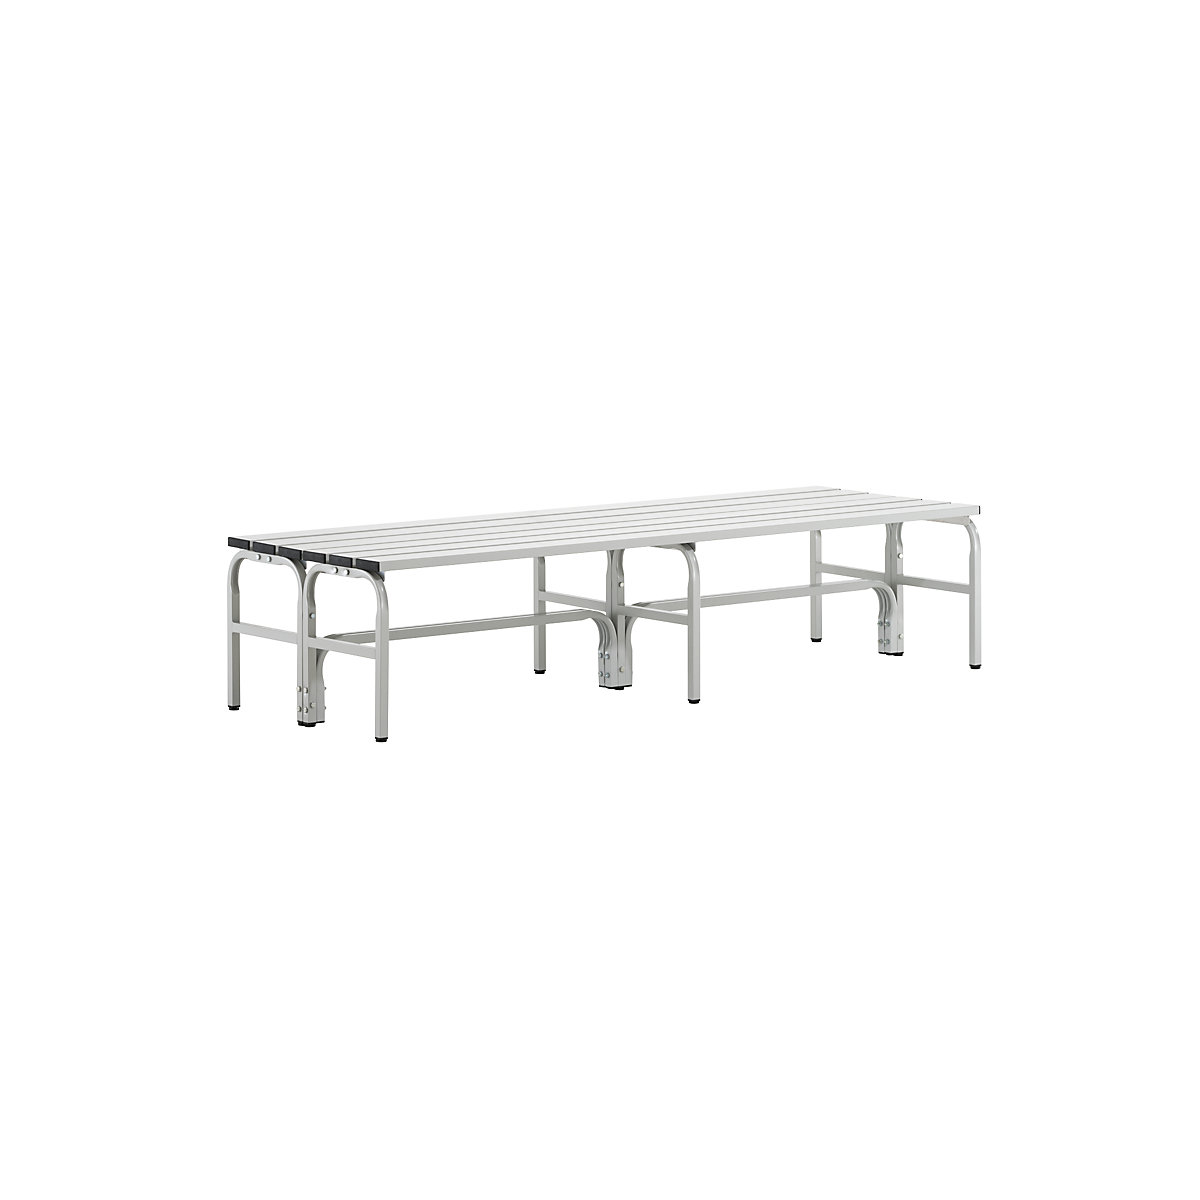 Cloakroom bench, double sided – Sypro, aluminium slats, light grey, length 1500 mm-4